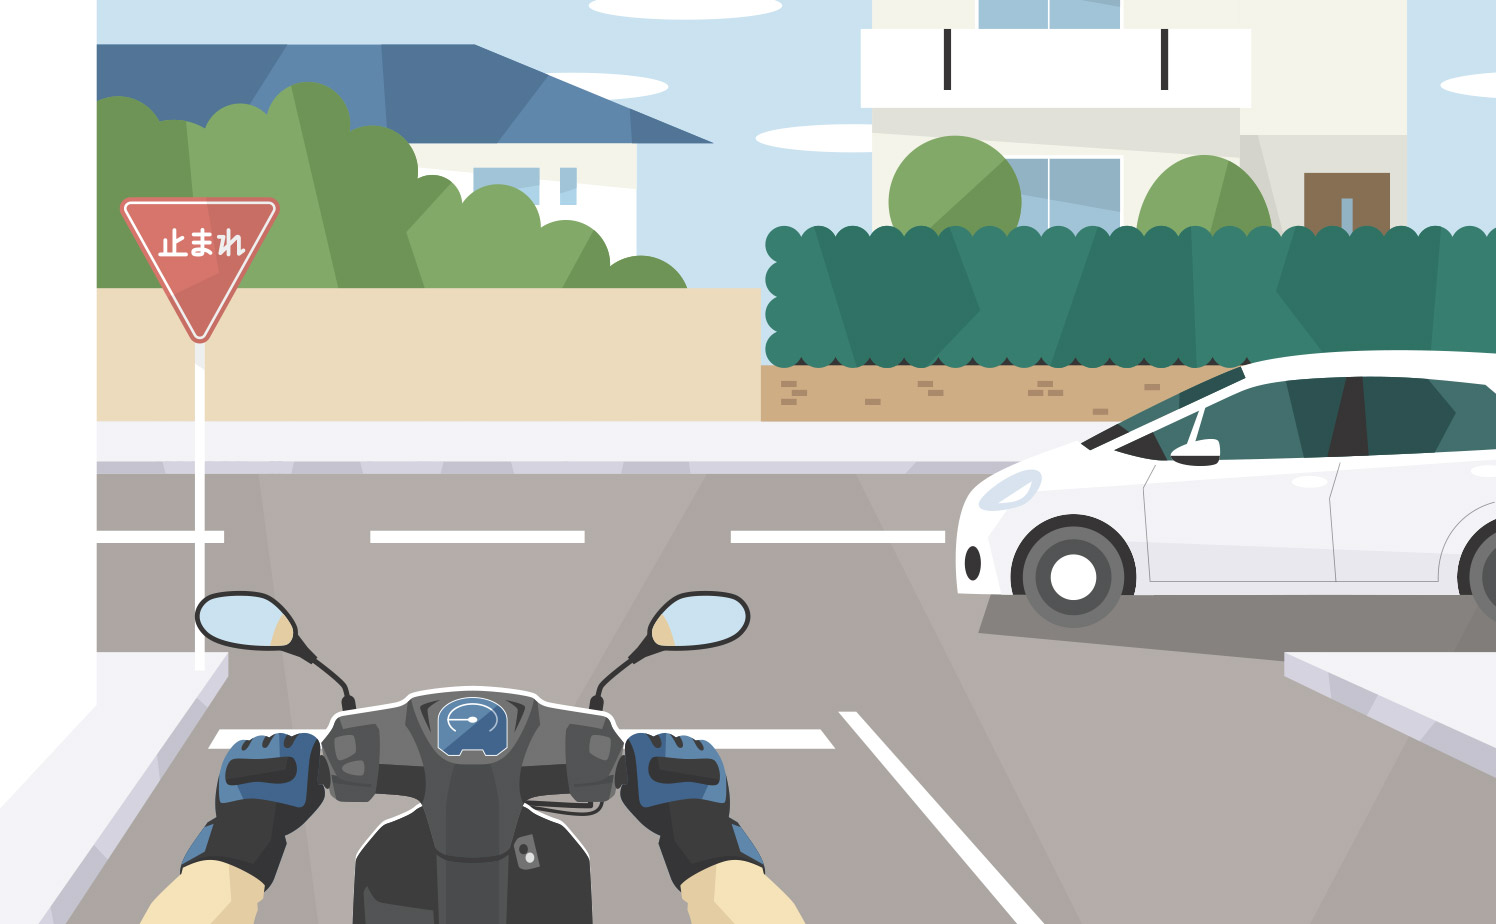 バイクとクルマの出会い頭事故を示すイラスト